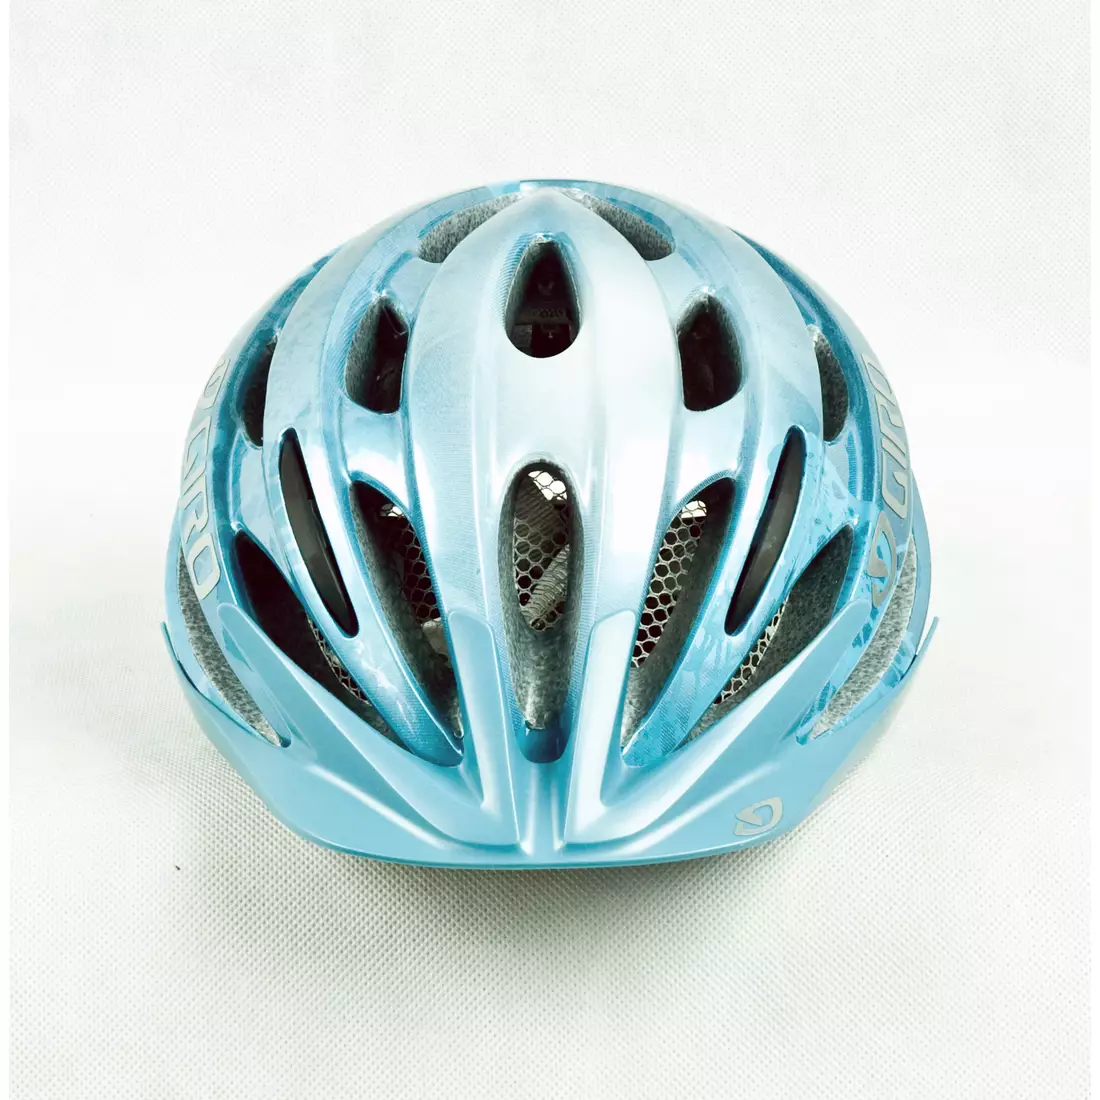 Casca de bicicleta dama GIRO VERONA, albastru deschis